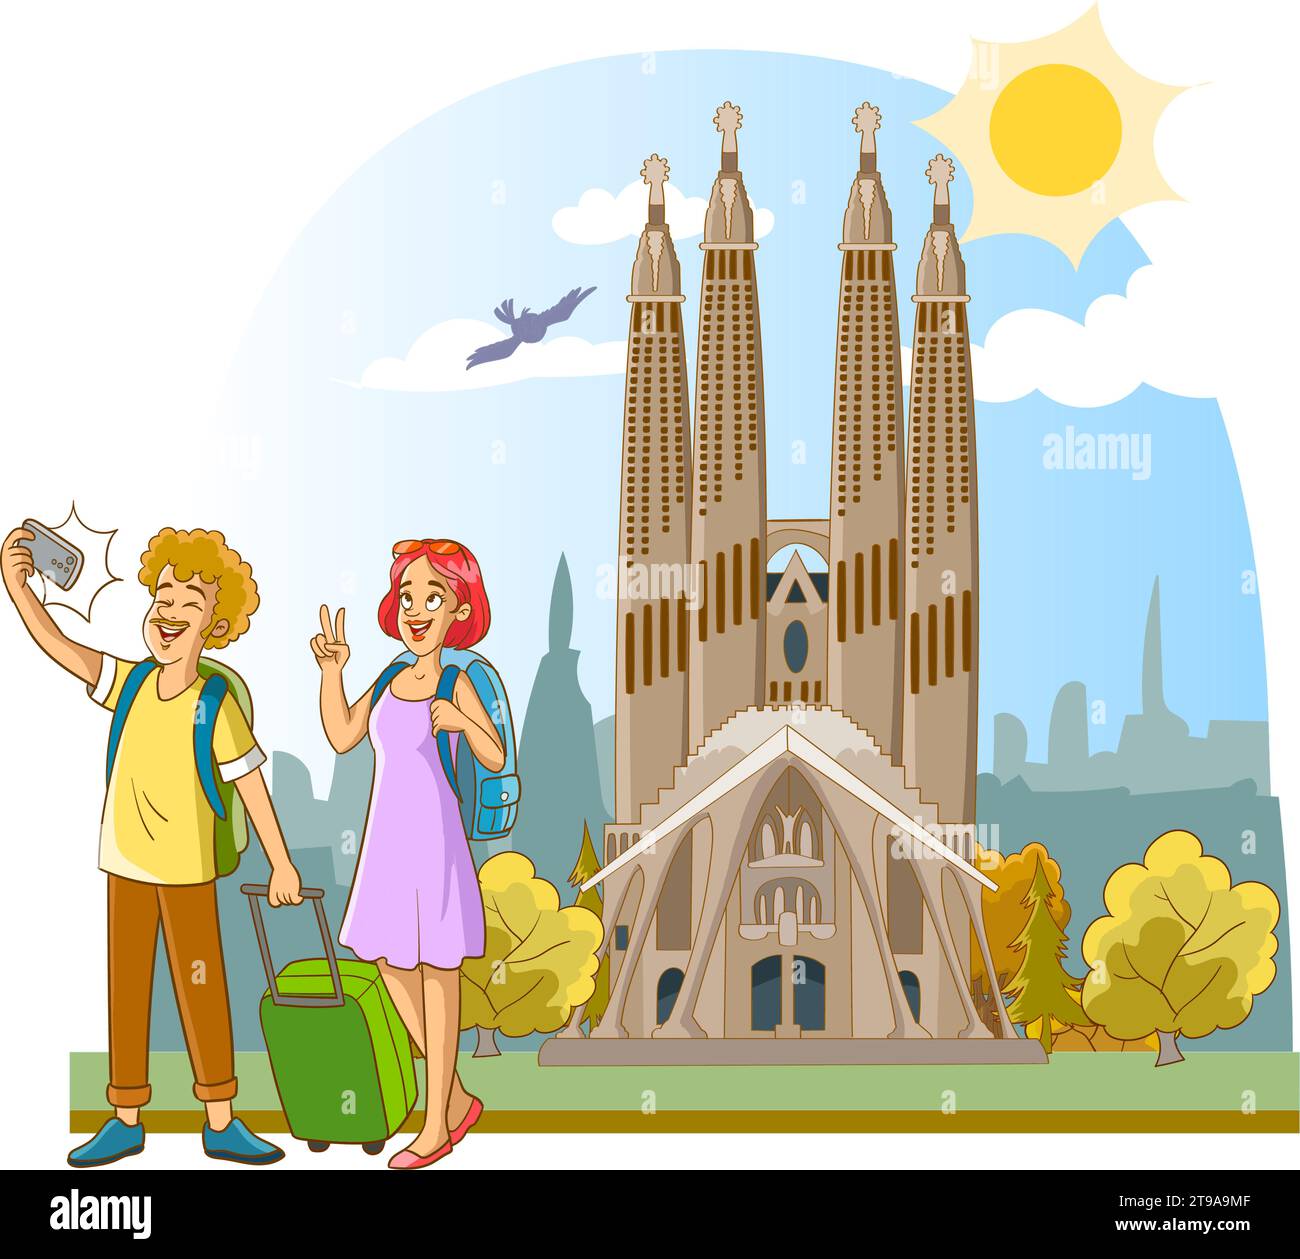 Illustration vectorielle d'un couple de touristes prenant un selfie à la Sagrada Familia, une grande église catholique romaine à Barcelone, en Espagne, conçue par l'archi catalan Illustration de Vecteur